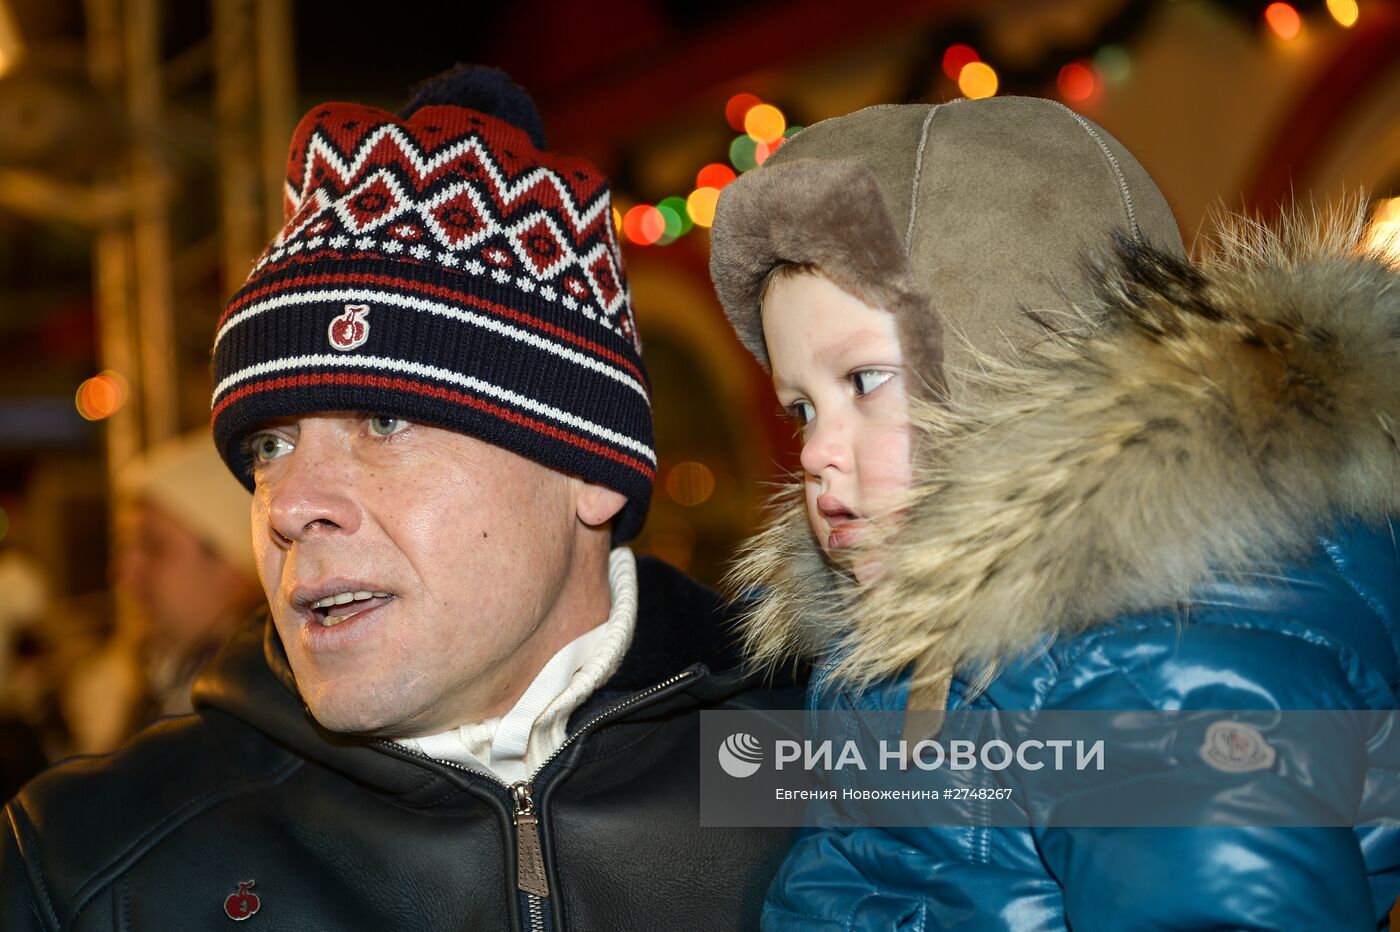 Открытие ГУМ Катка и ГУМ Ярмарки на Красной площади